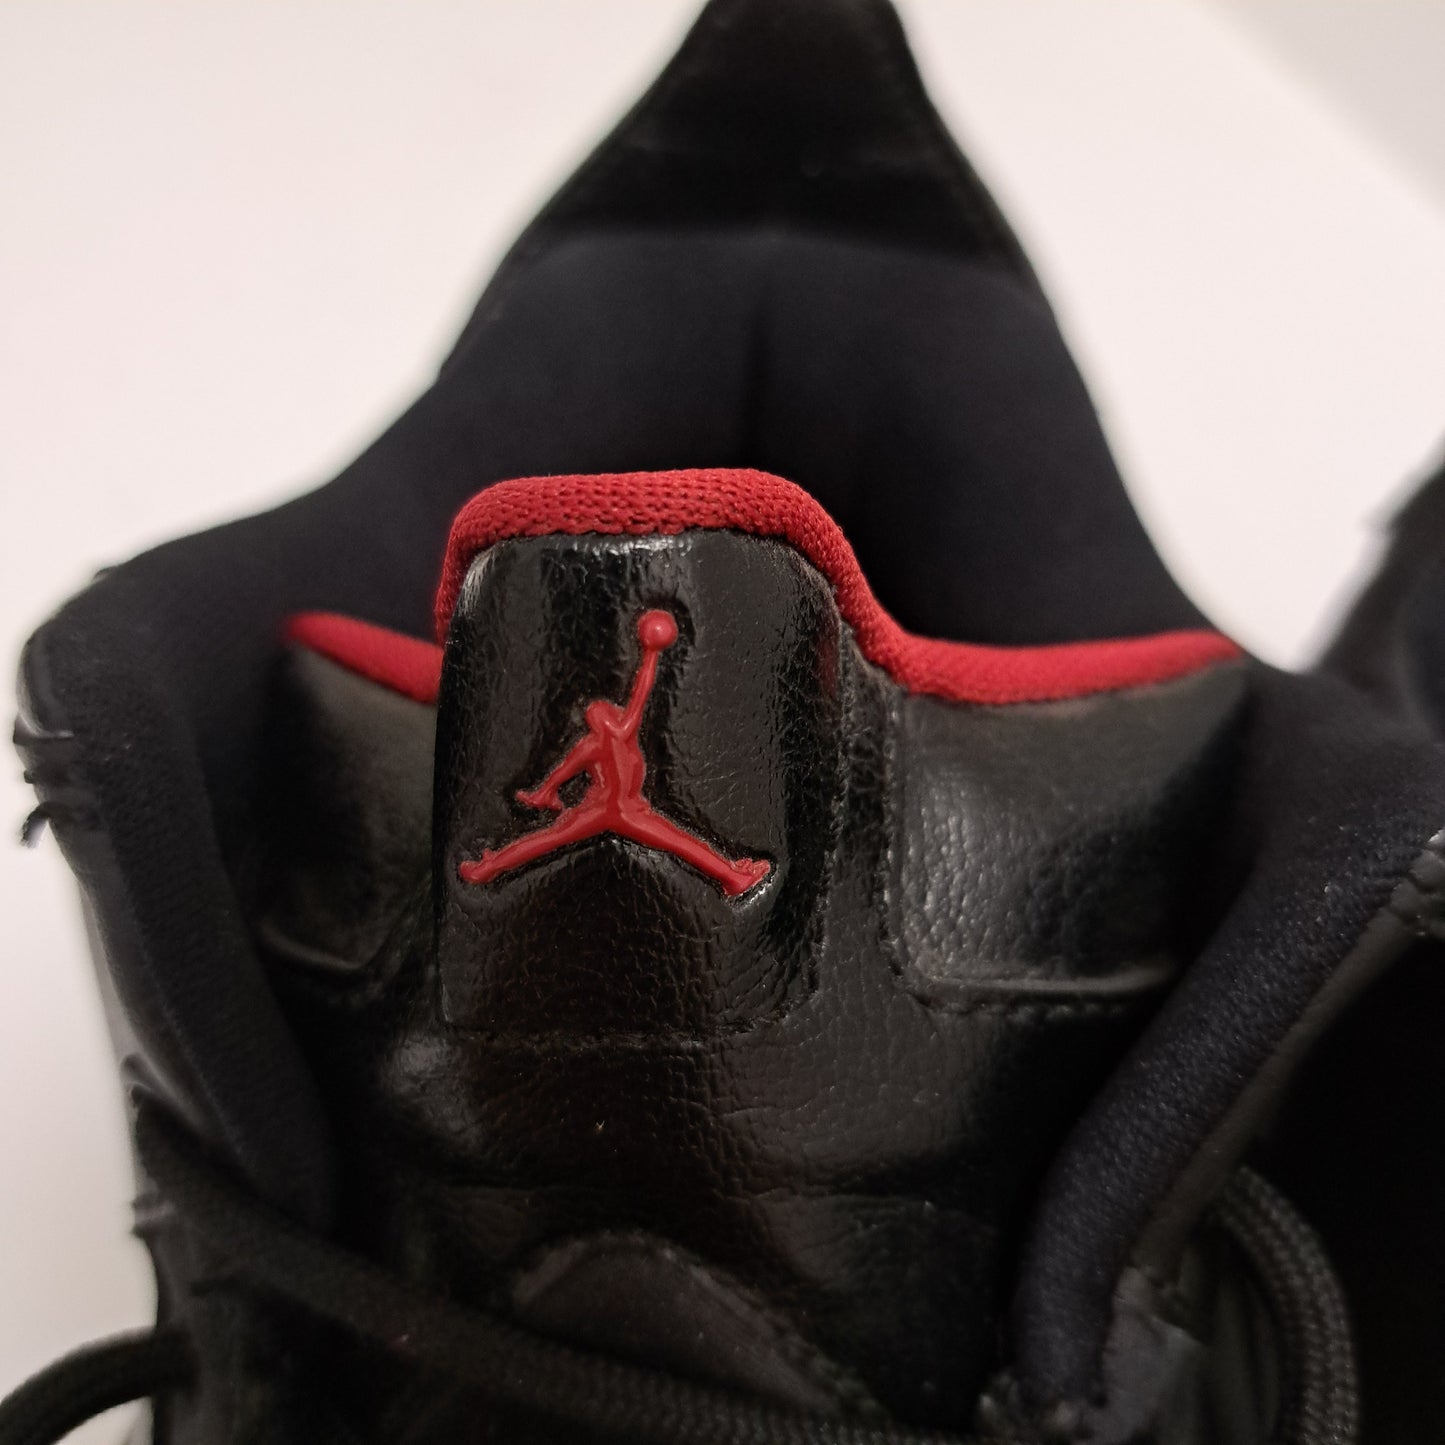 Jordan Vintage Sport Shoes Black Size 5.5 UK